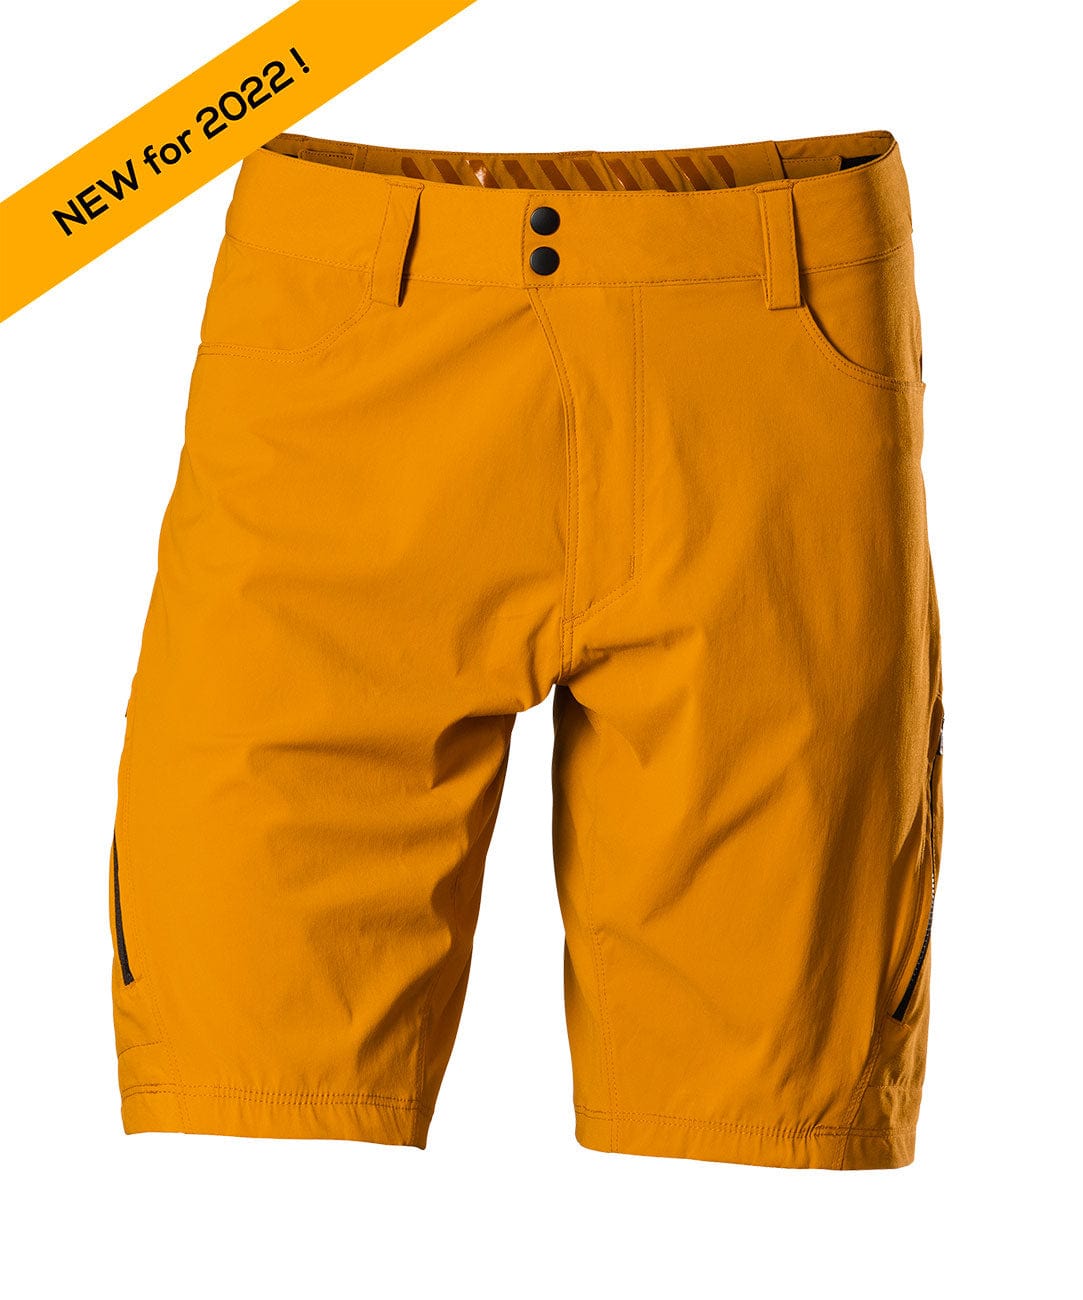 Men's Gravel 10" Shorts